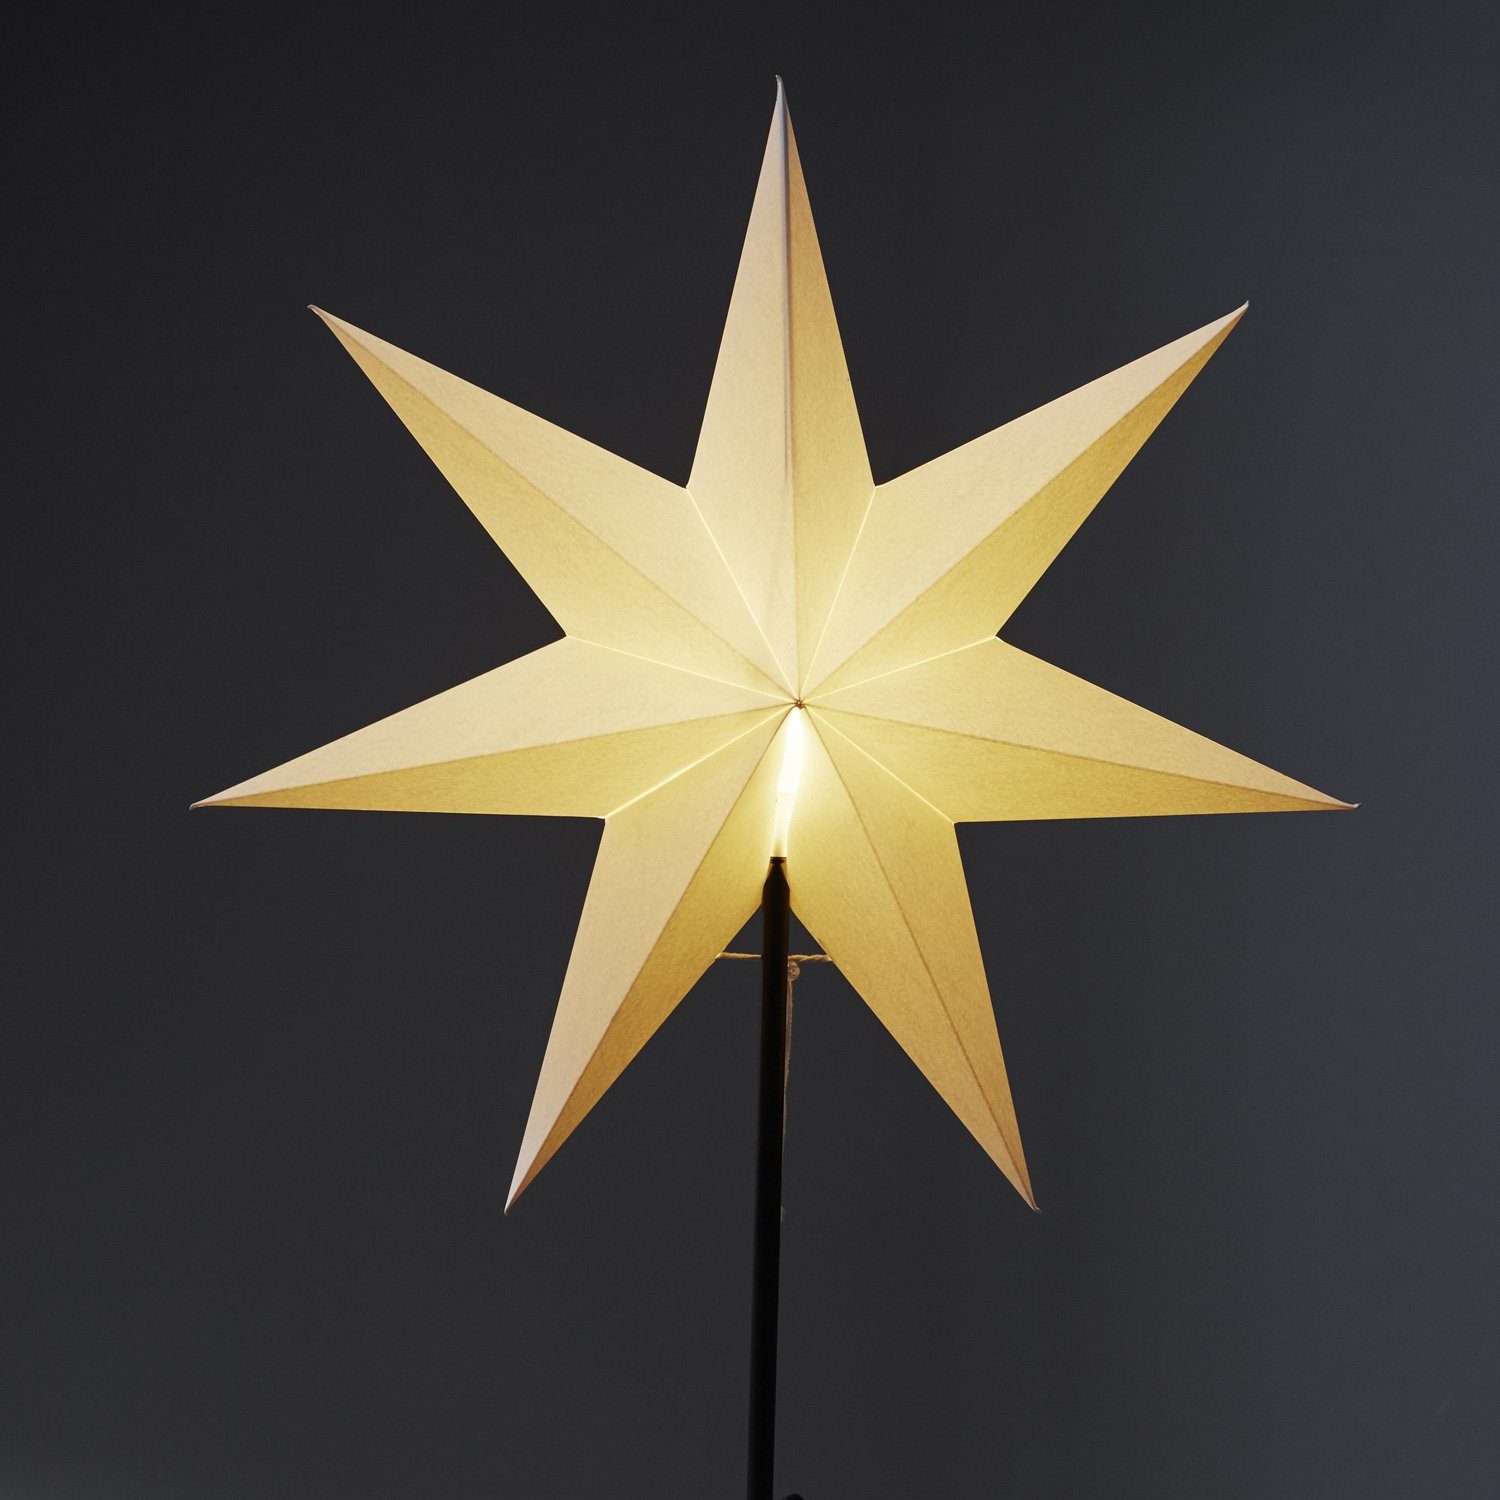 55cm E14 inkl. stehend Papierstern LED Stern Weihnachtsstern weiß TRADING Kabel STAR 7-zackig